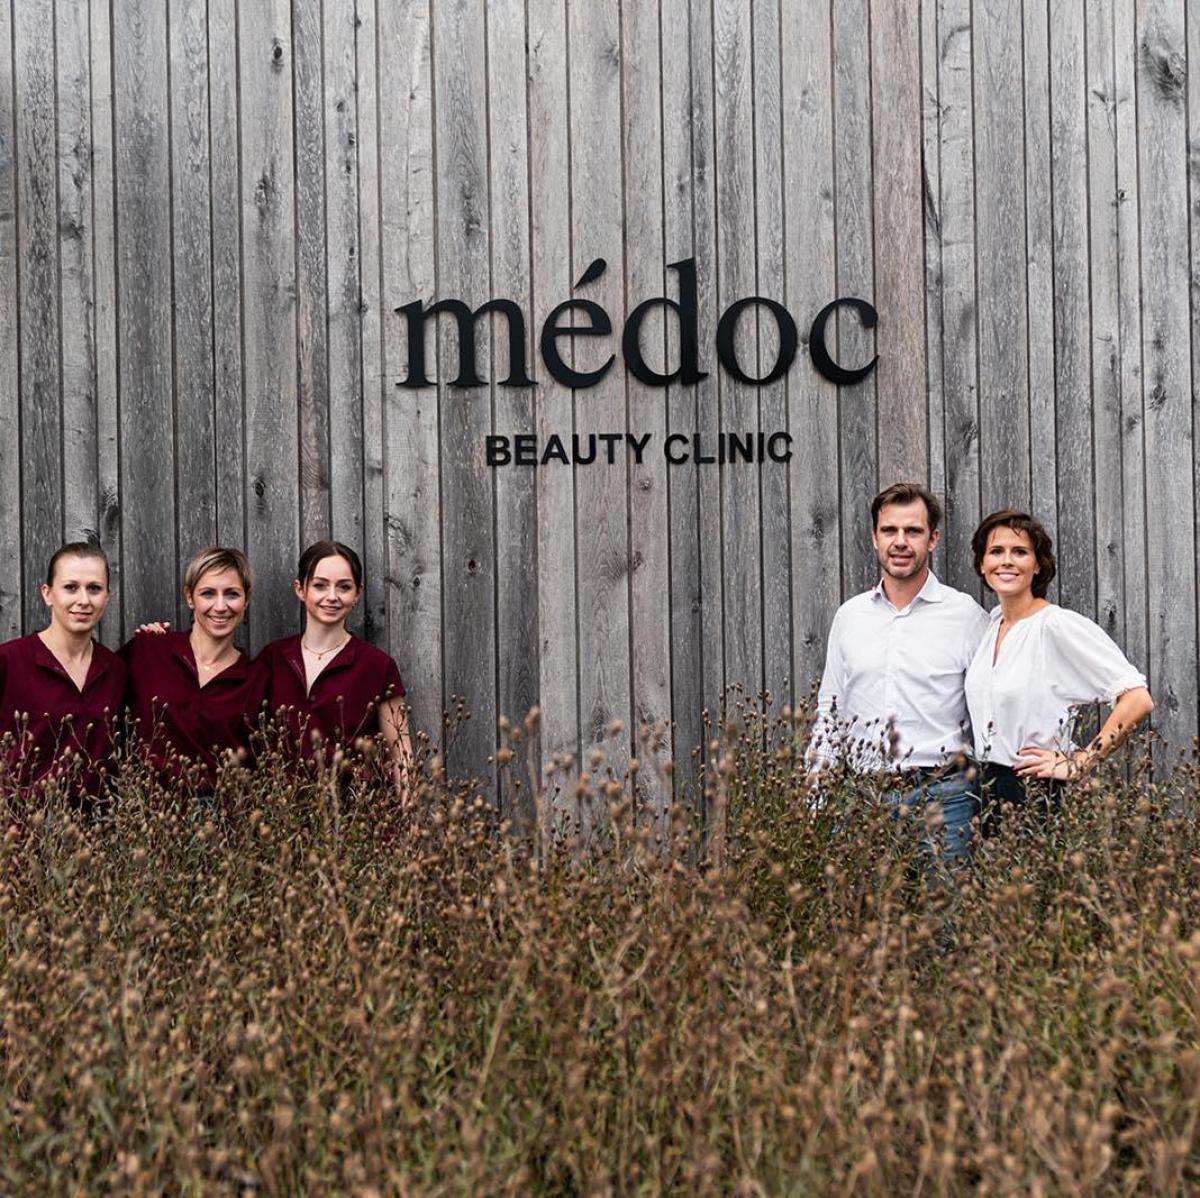 “Médoc Beauty Clinic is dat tikkeltje meer dan een schoonheidssalon, omdat we een medisch- esthetische kliniek zijn.”